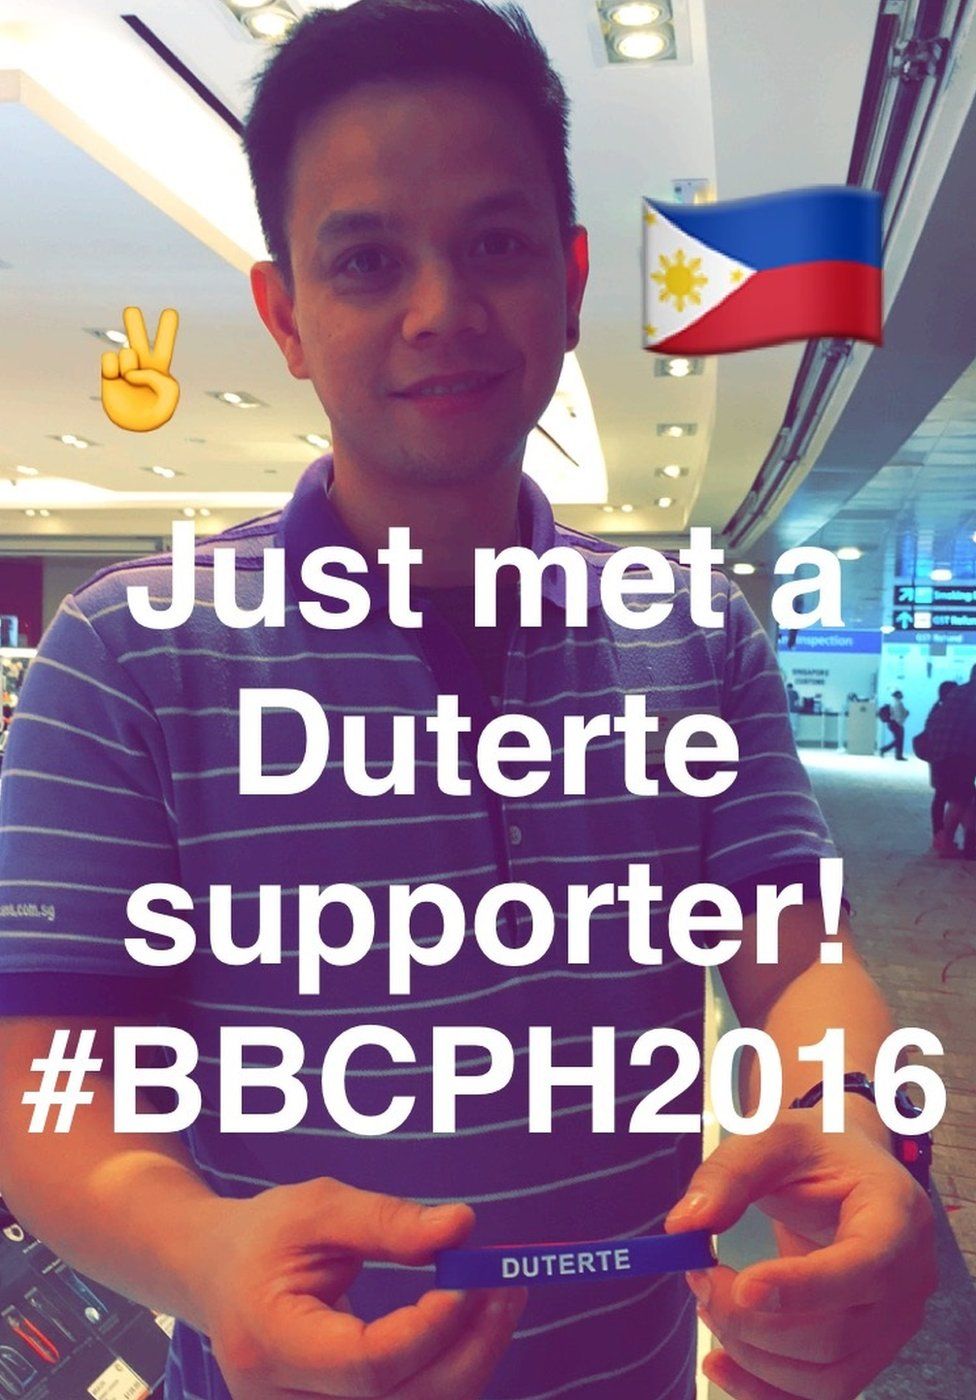 Duterte supporter